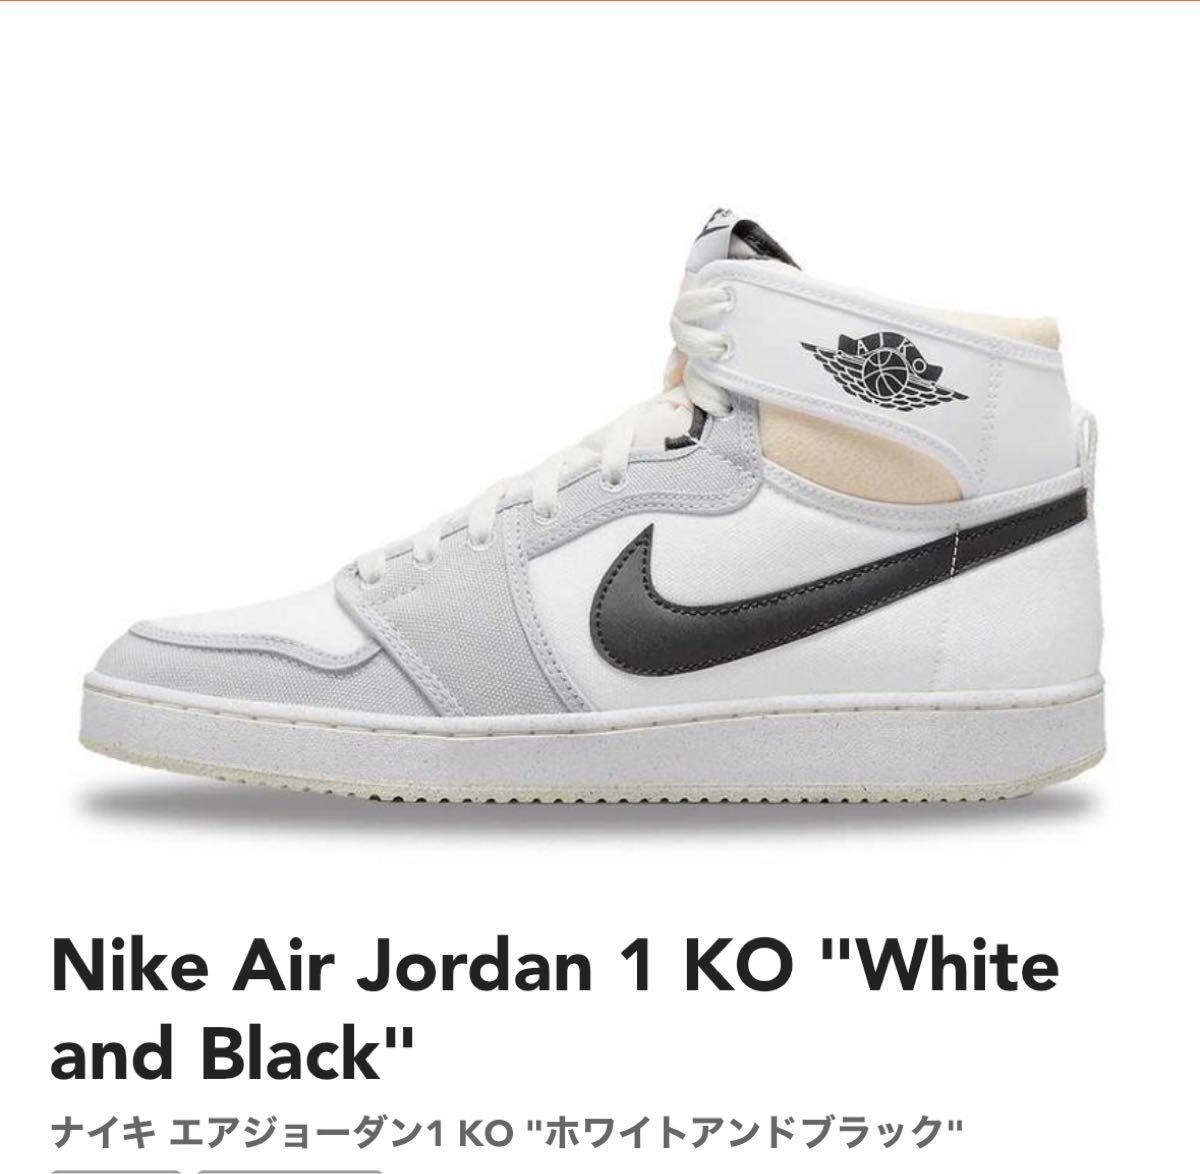 Nike Air Jordan 1 KO "White and Blackエアジョーダン1 KO "ホワイト